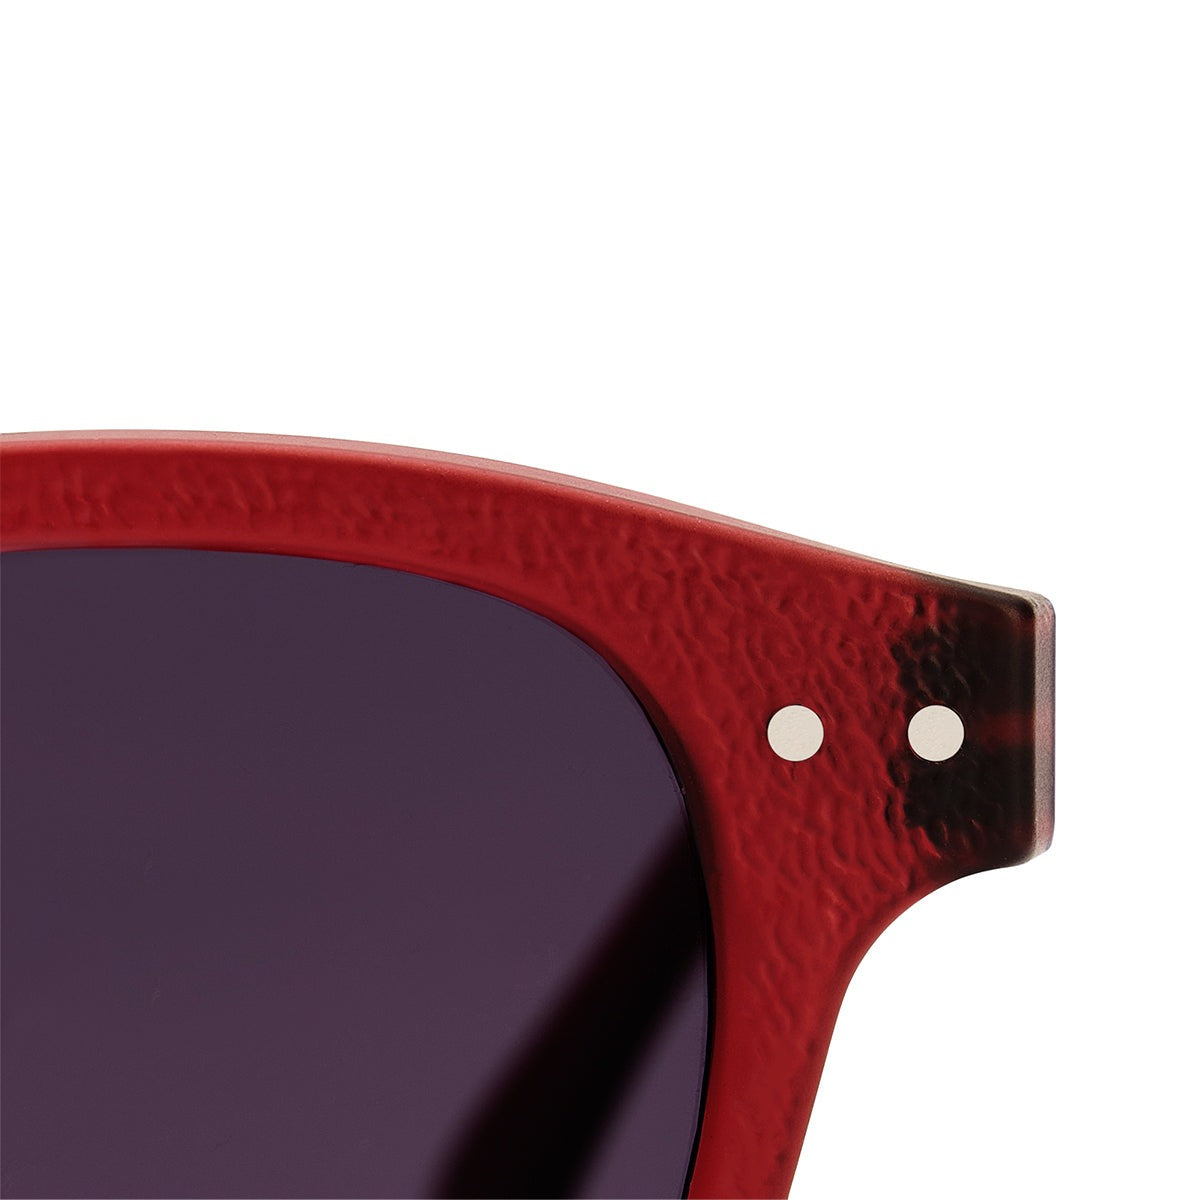 Izipizi Essentia #C Sunglasses Rosy Red